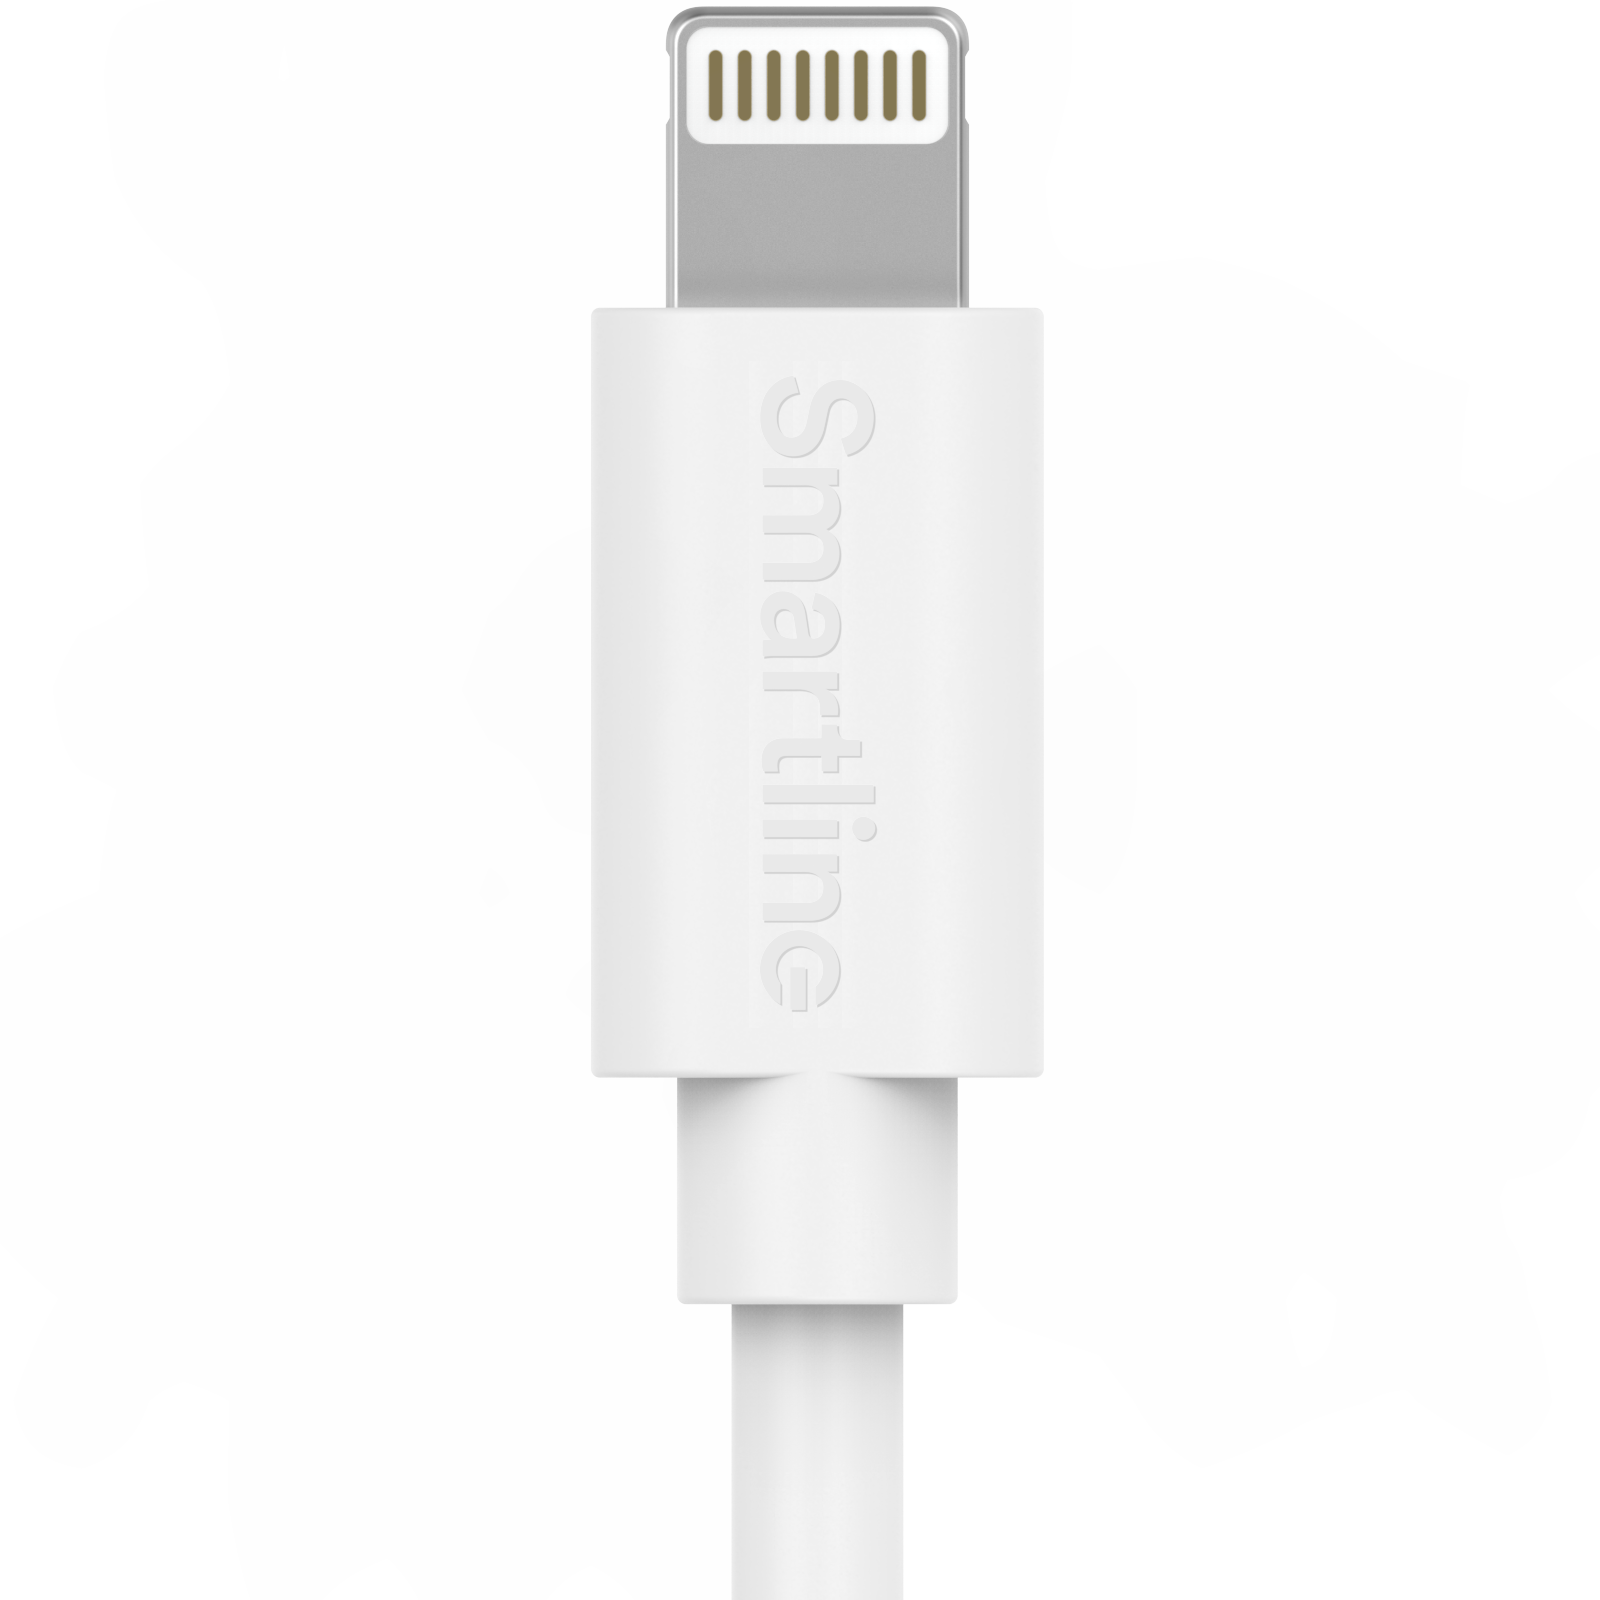 Komplet oplader til iPhone 13 Pro Max - 2m kabel og vægoplader - Smartline